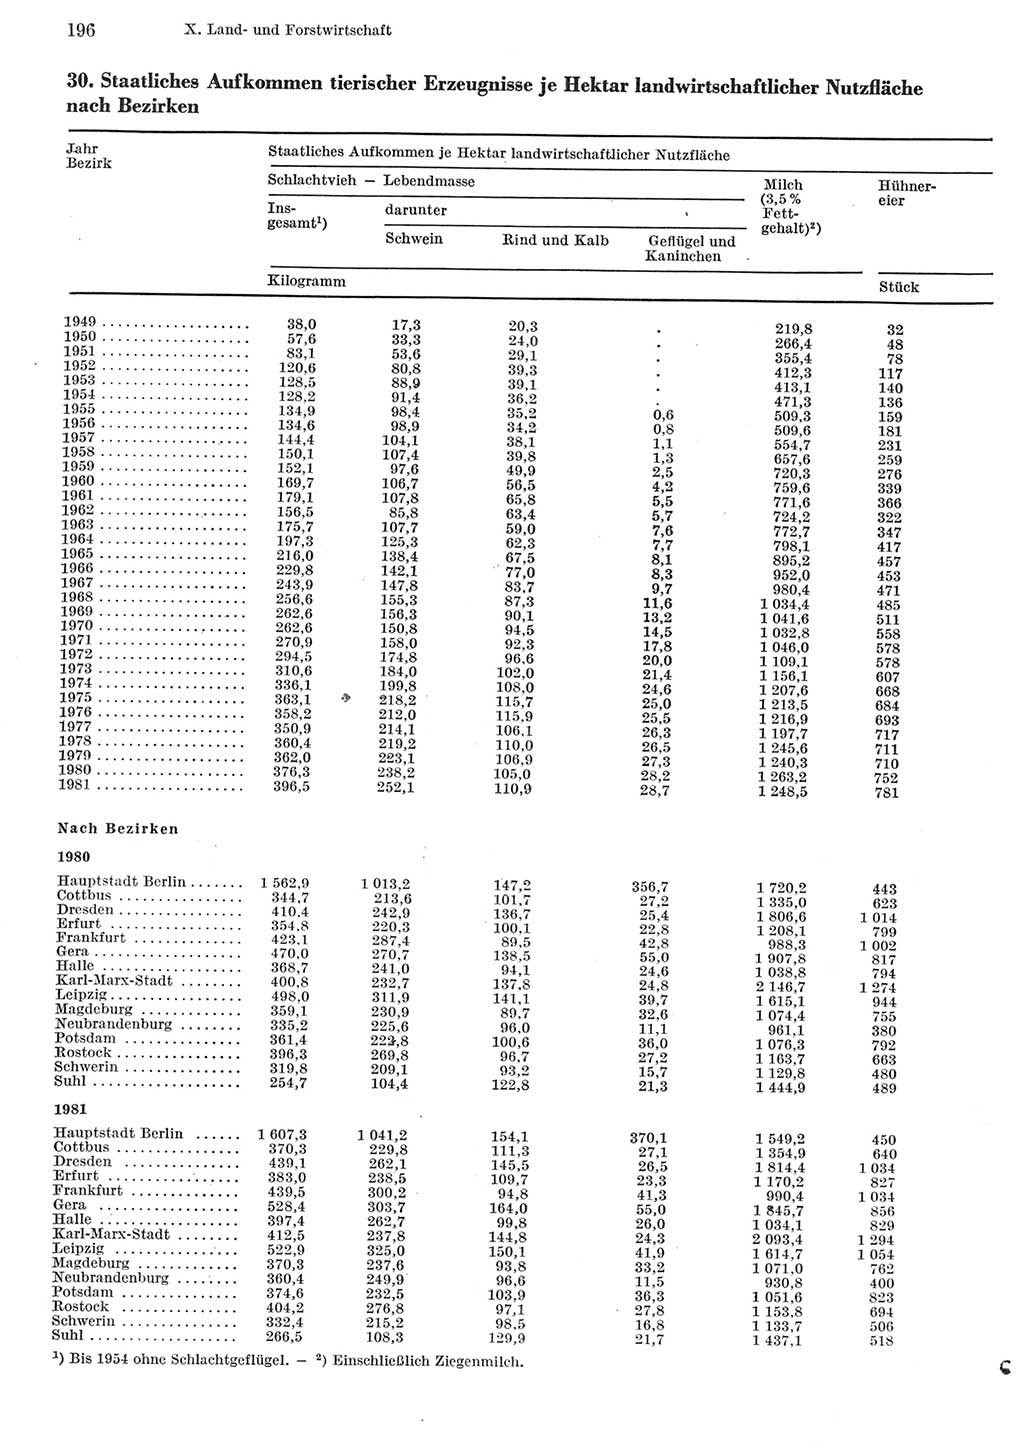 Statistisches Jahrbuch der Deutschen Demokratischen Republik (DDR) 1982, Seite 196 (Stat. Jb. DDR 1982, S. 196)